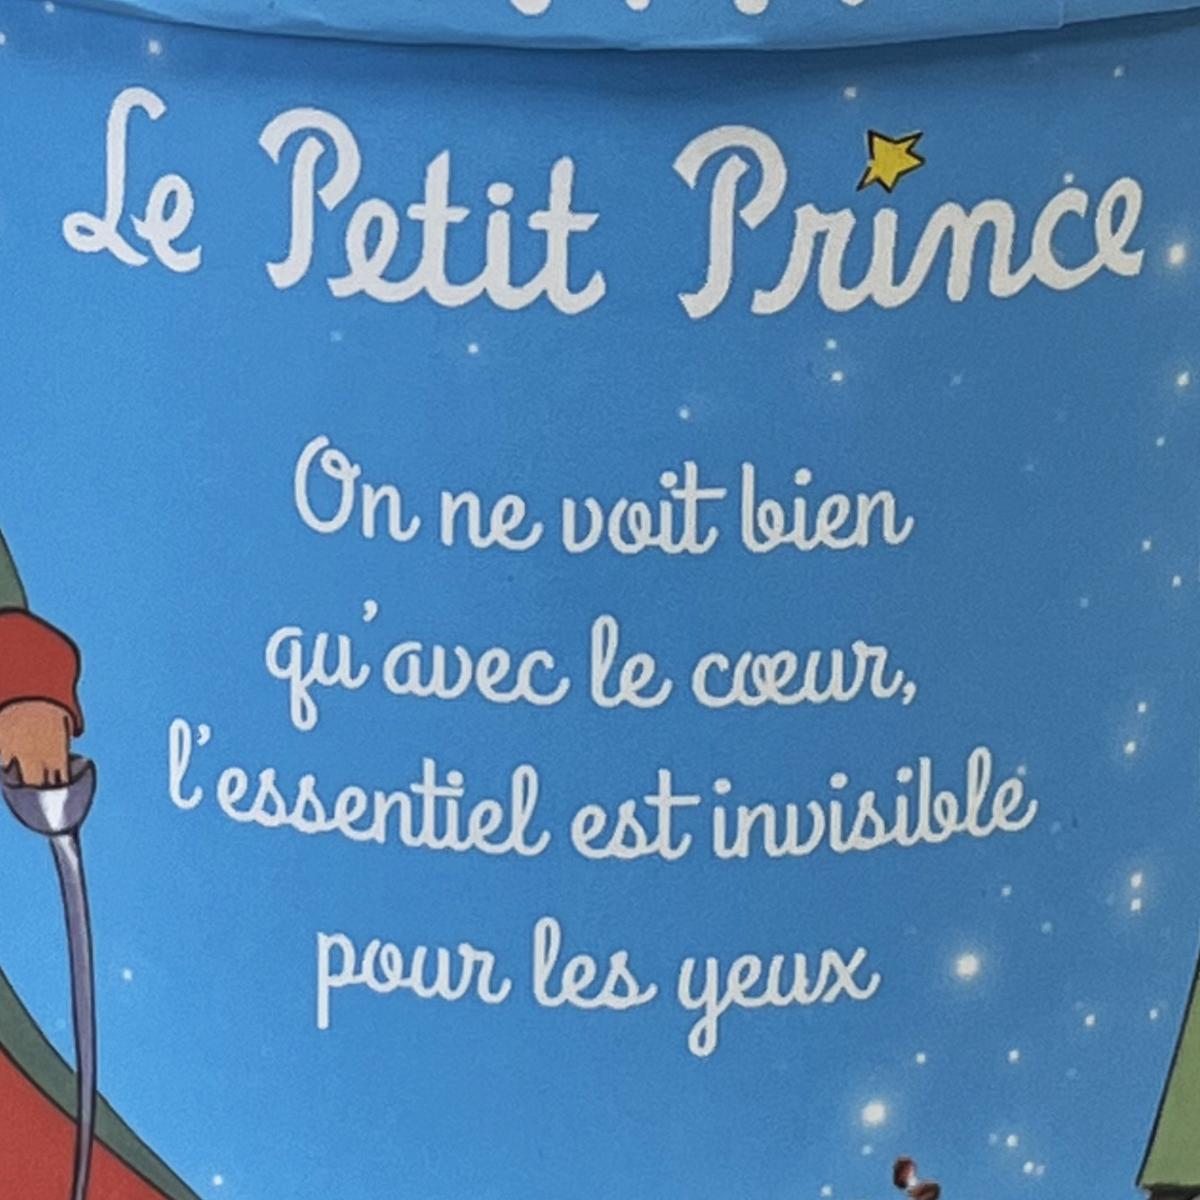 Le Petit Prince de St Exupry collection Mug